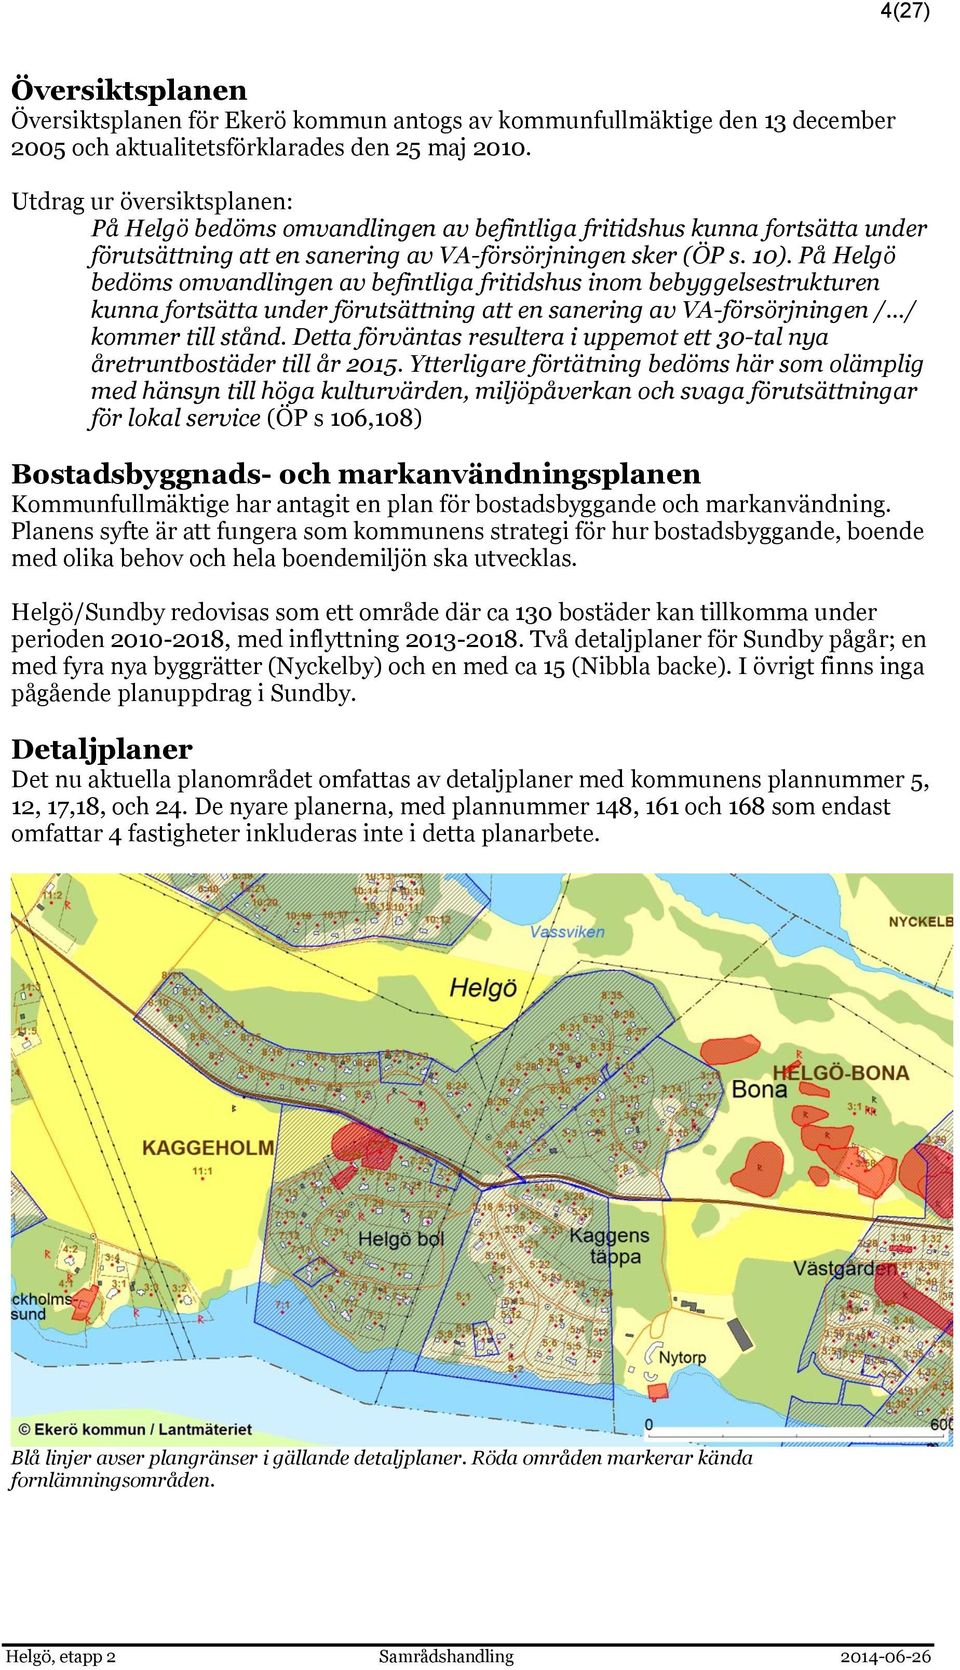 På Helgö bedöms omvandlingen av befintliga fritidshus inom bebyggelsestrukturen kunna fortsätta under förutsättning att en sanering av VA-försörjningen / / kommer till stånd.